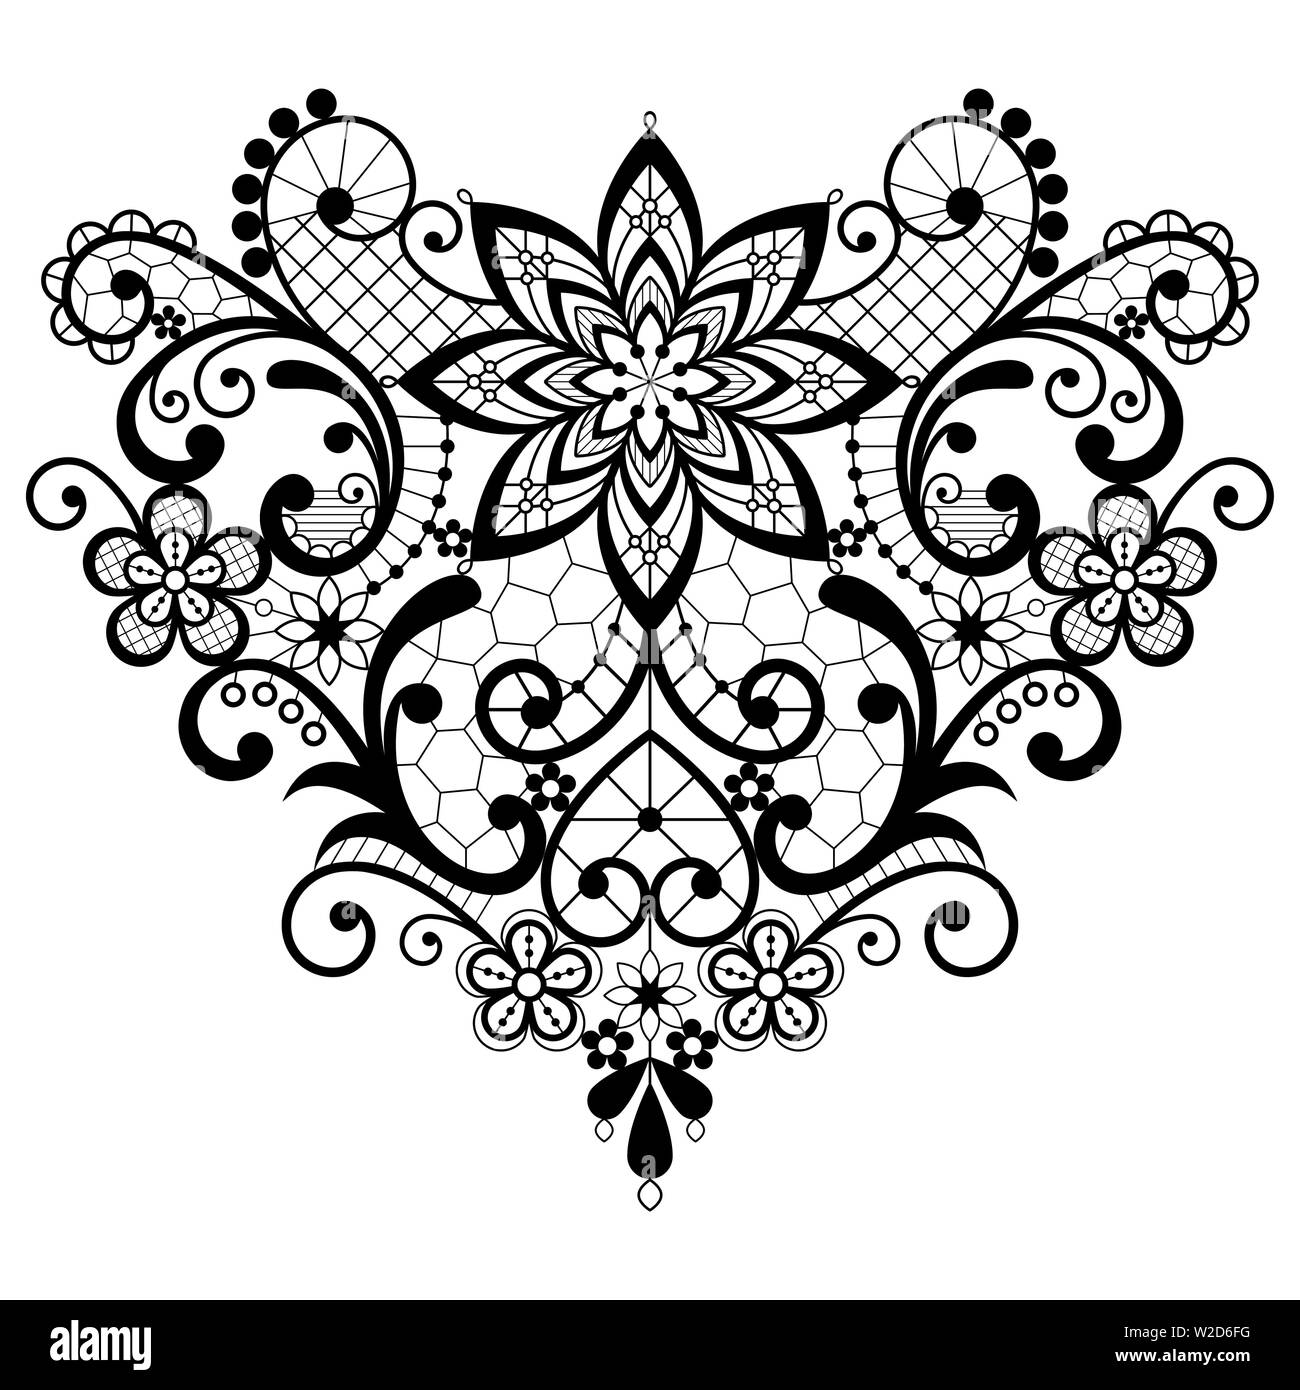 Herz Spitze schwarz und weiß vektor design - Valentinstag, Hochzeit, Liebe Herz Form Muster mit Blumen und wirbelt Stock Vektor